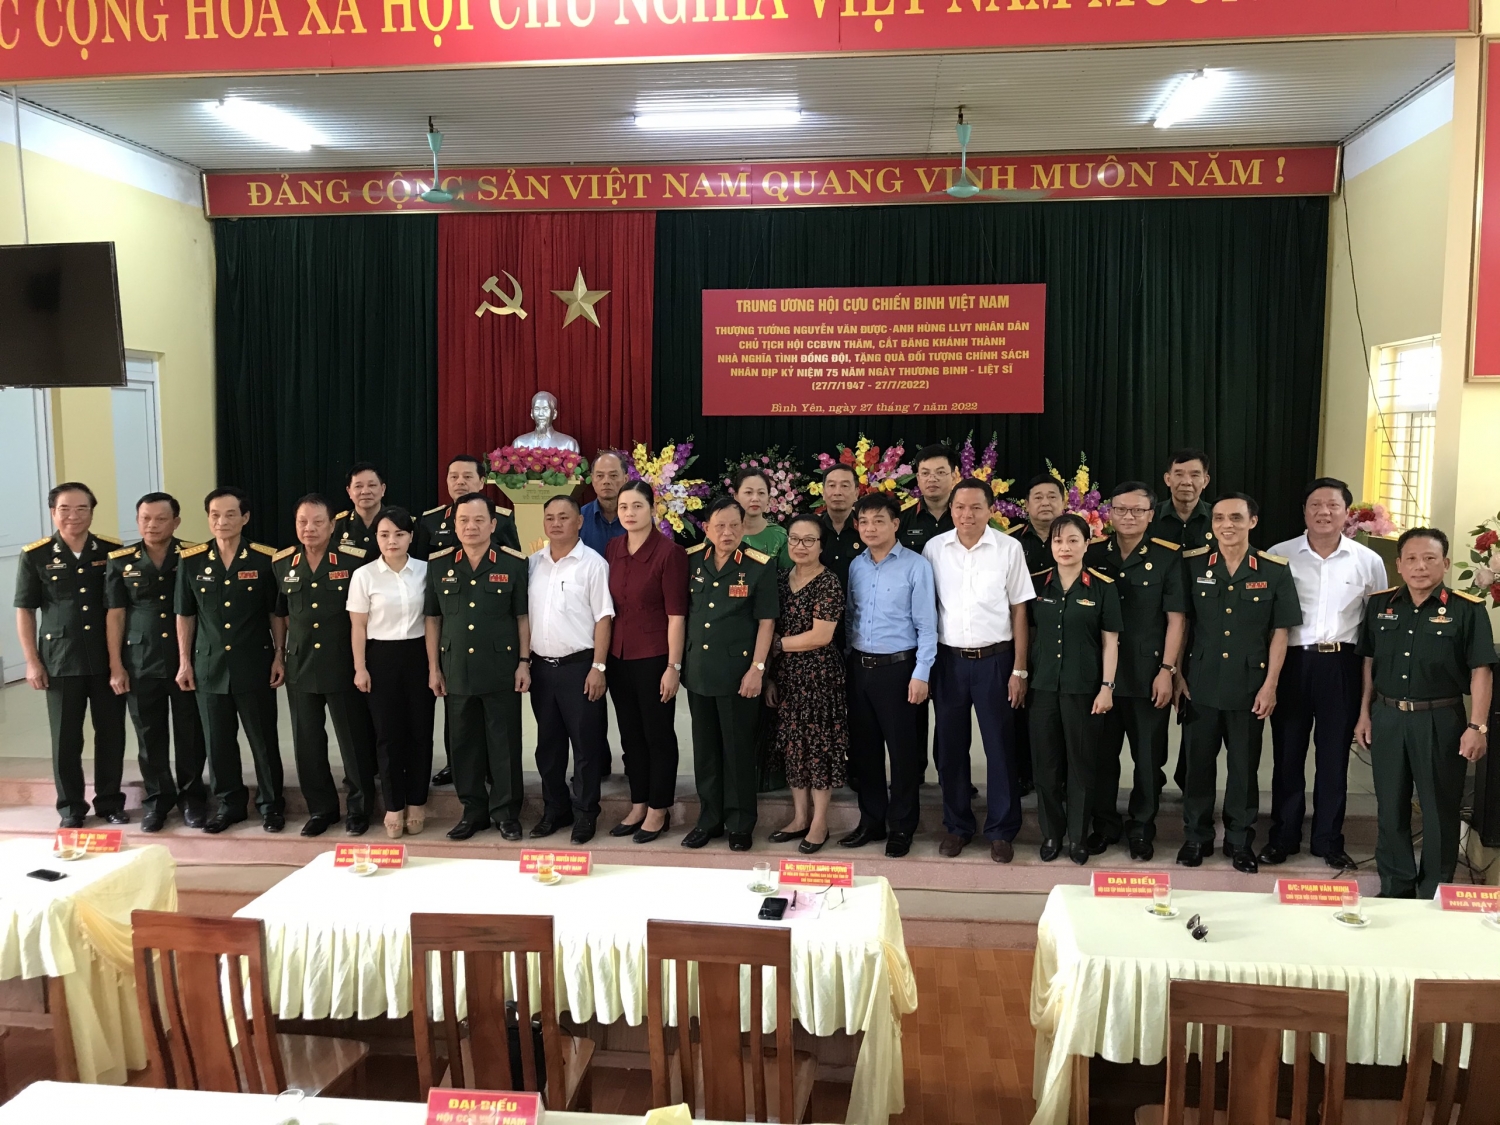 Đoàn công tác chụp ảnh lưu niệm với lãnh đạo tỉnh Tuyên Quang, huyện Sơn Dương và xã Bình Yên.